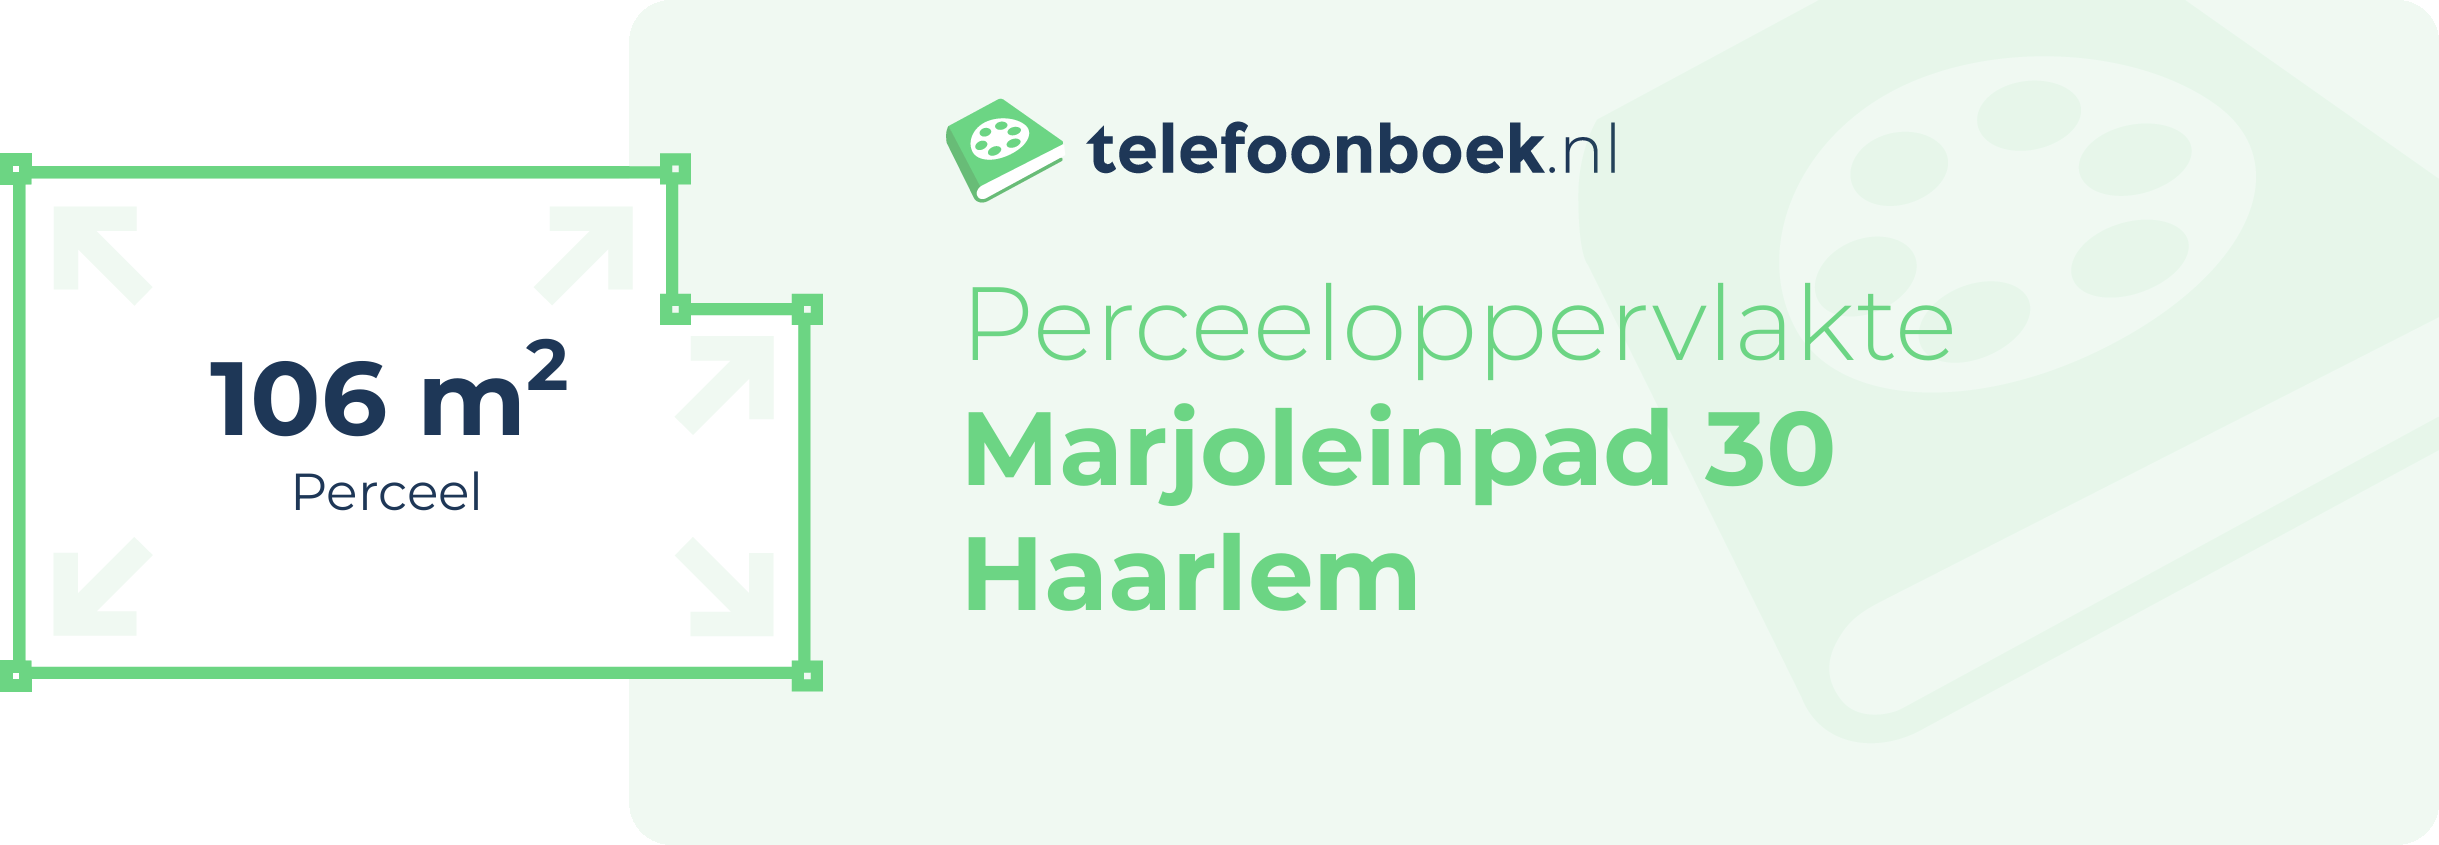 Perceeloppervlakte Marjoleinpad 30 Haarlem